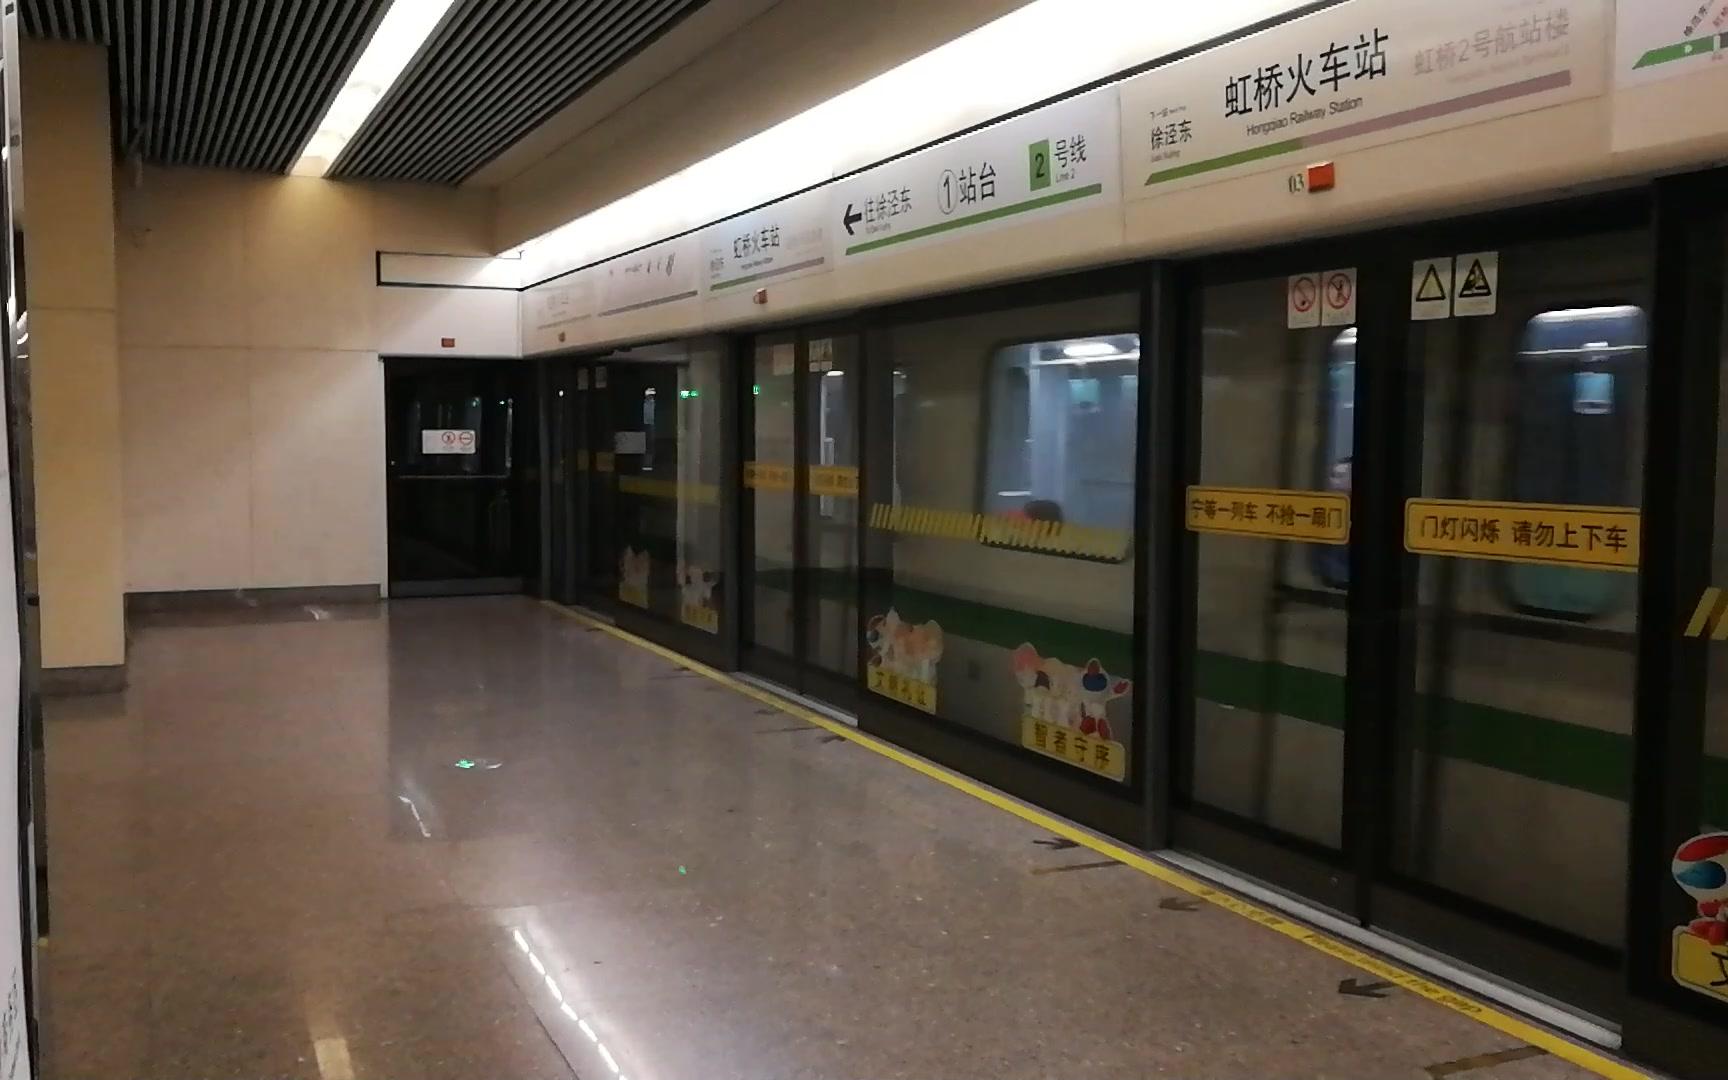 【上海地铁】上海轨道交通2号线列车离开虹桥火车站